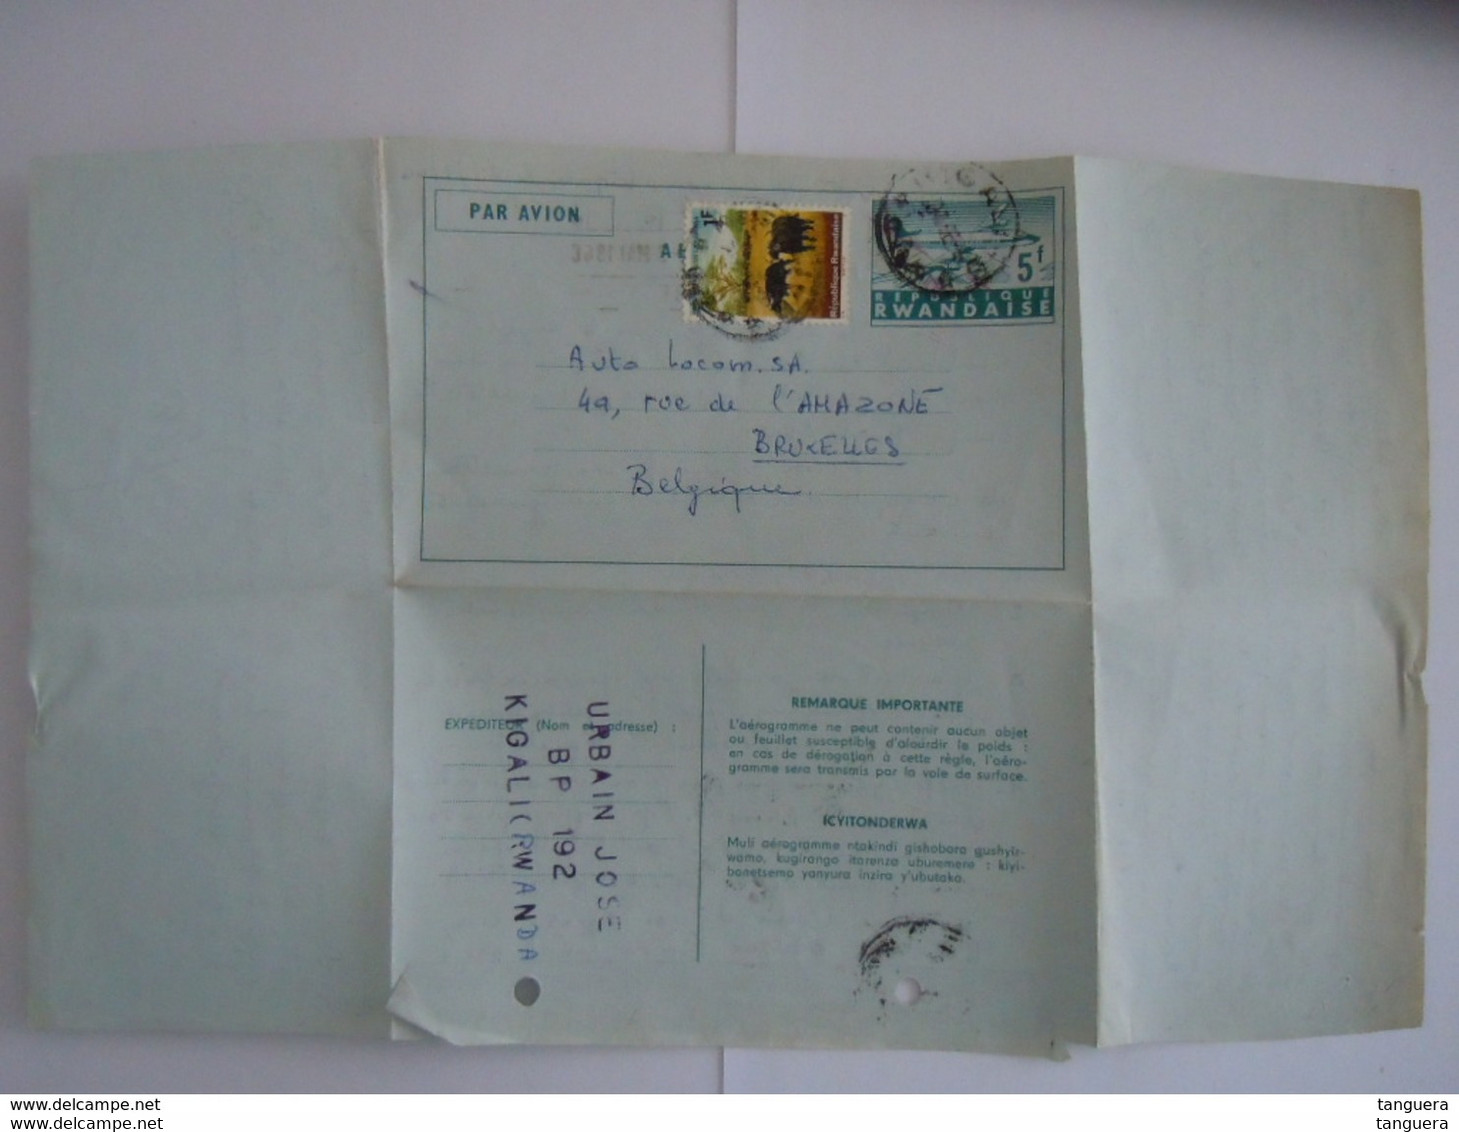 Republique Rwandaise Entier Postal Par Avion Aerogramme 1966 5f + 1f Kigali Demande D'info Sur Achat Fiat 850 Bruxelles - Lettres & Documents